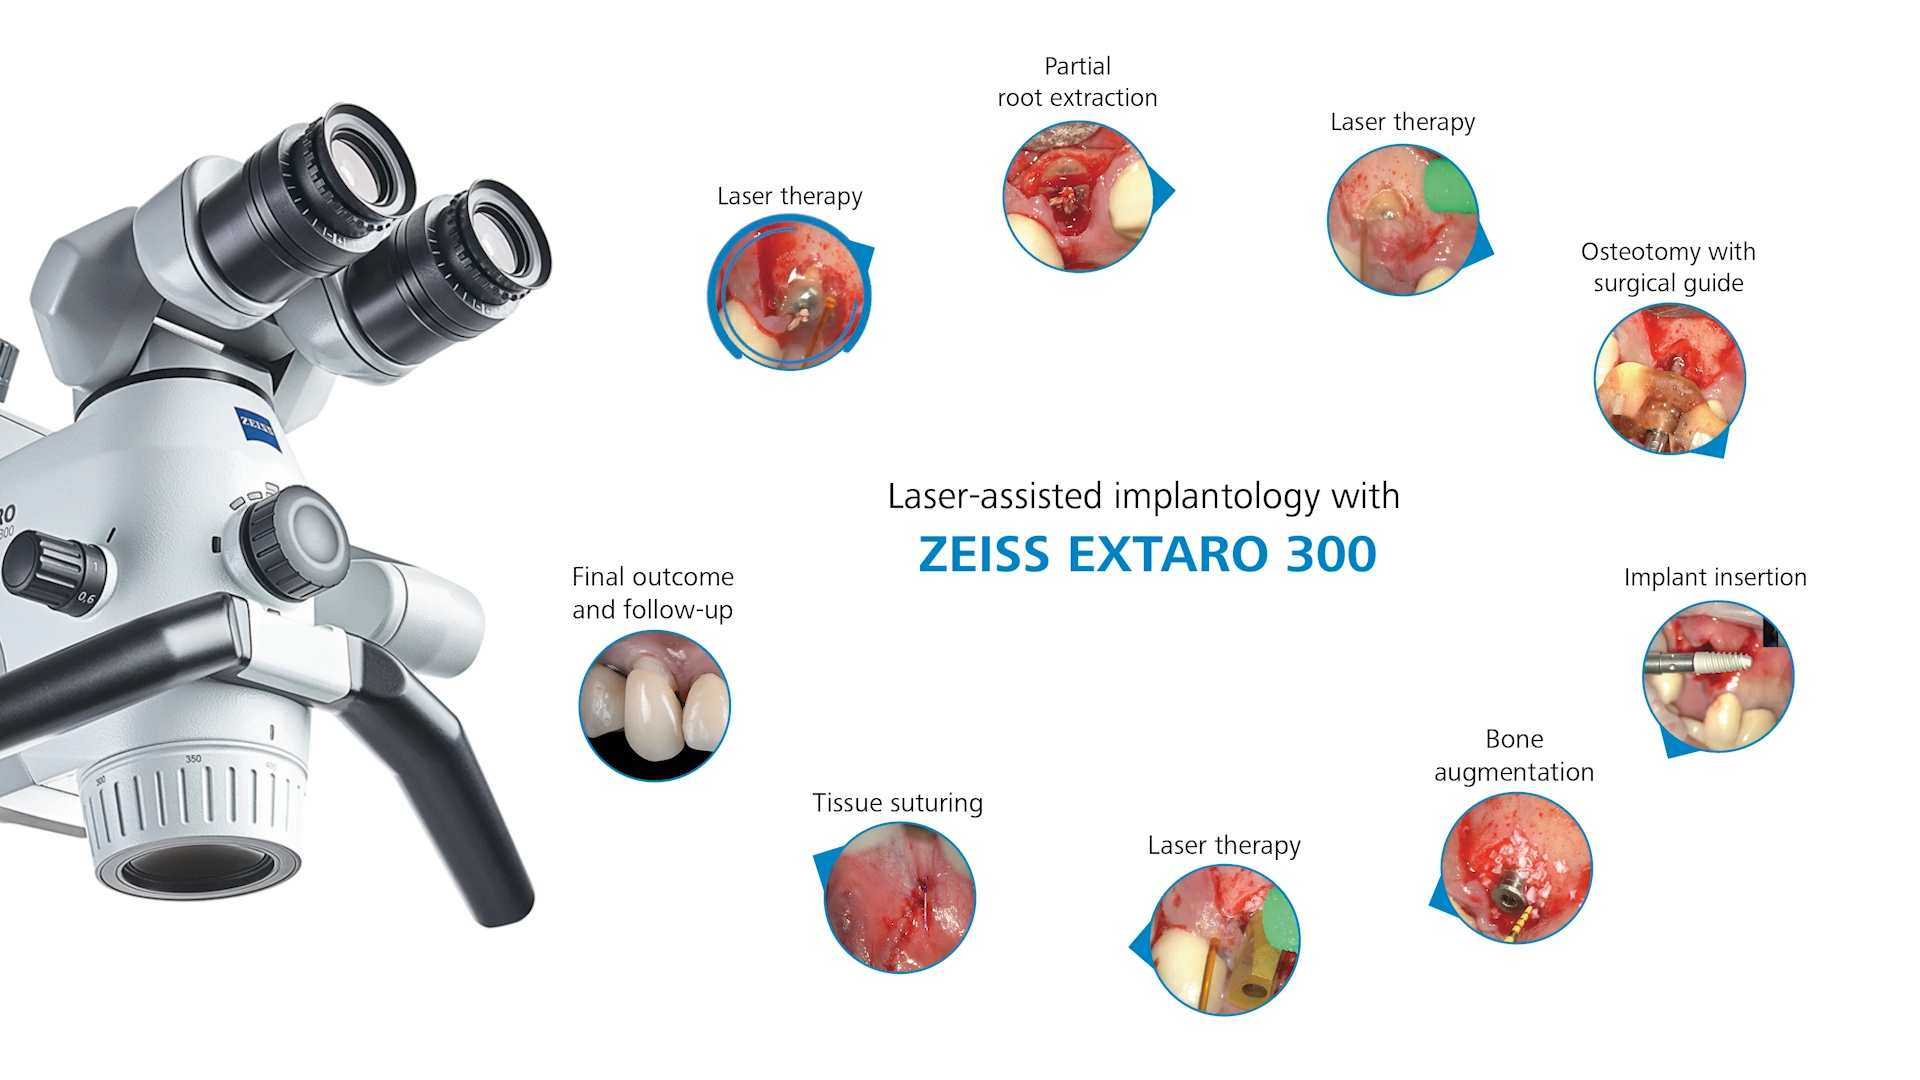 Implantologia laser assistita con ZEISS EXTARO 300